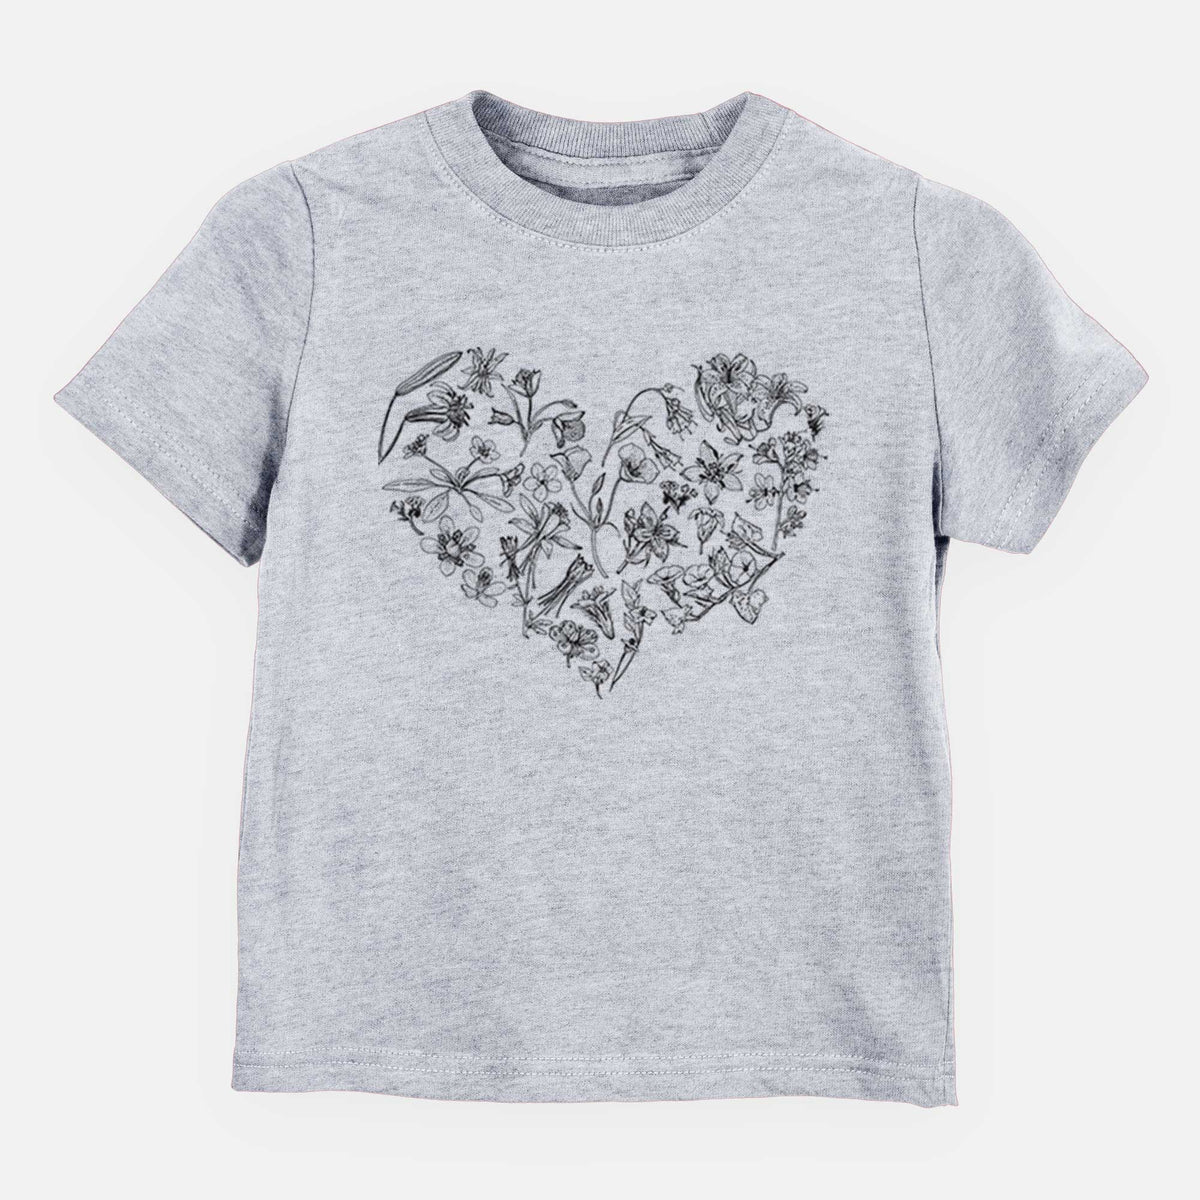 Heart Full of California Mountain Wildflowers - Kids Shirt